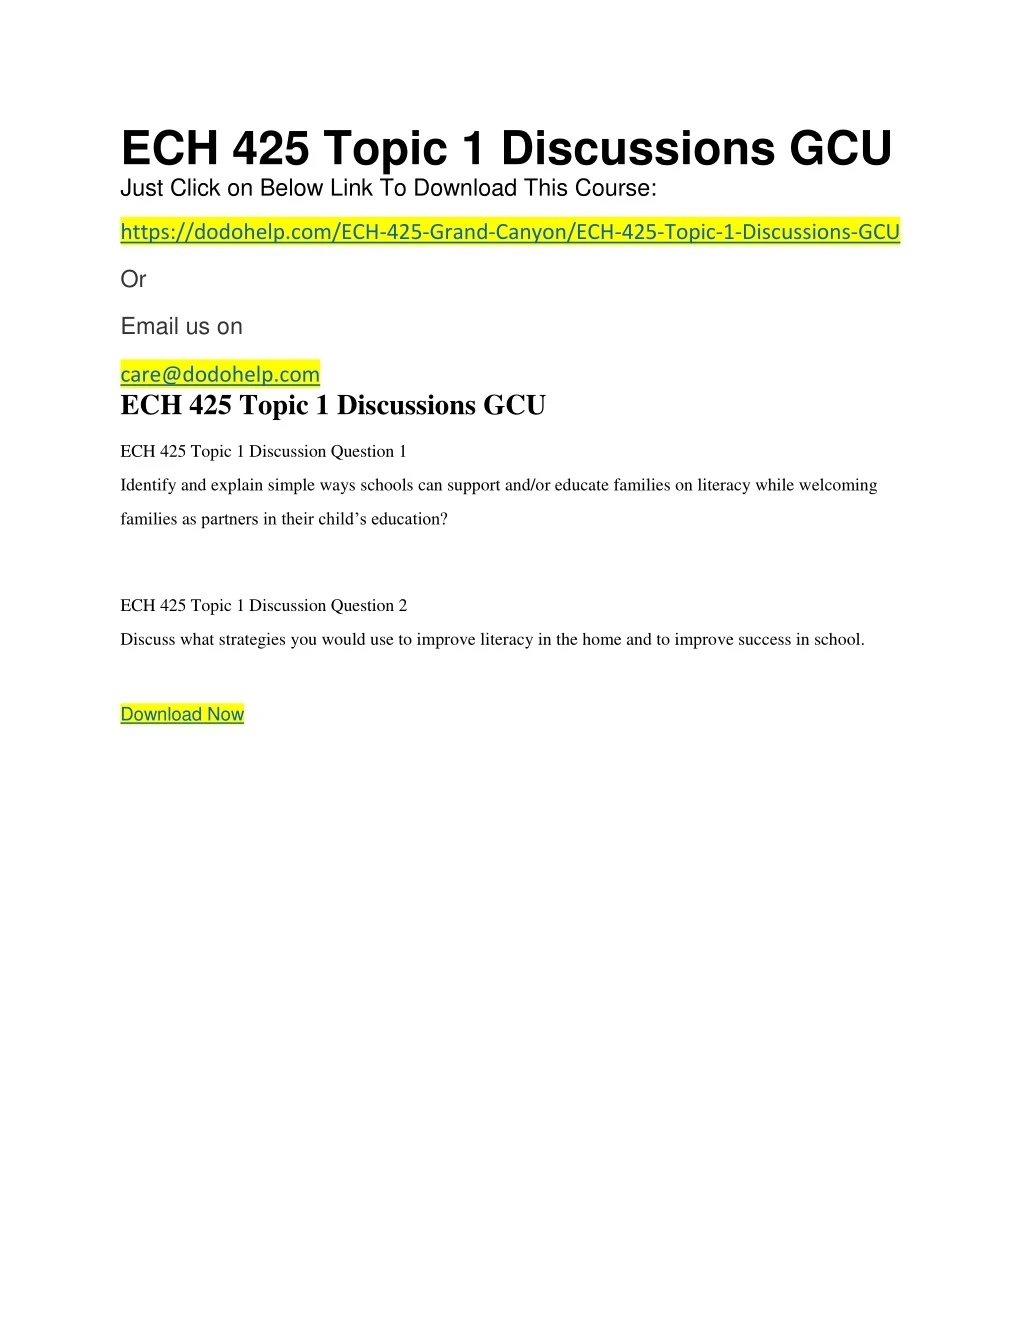 ech 425 topic 1 discussions gcu just click